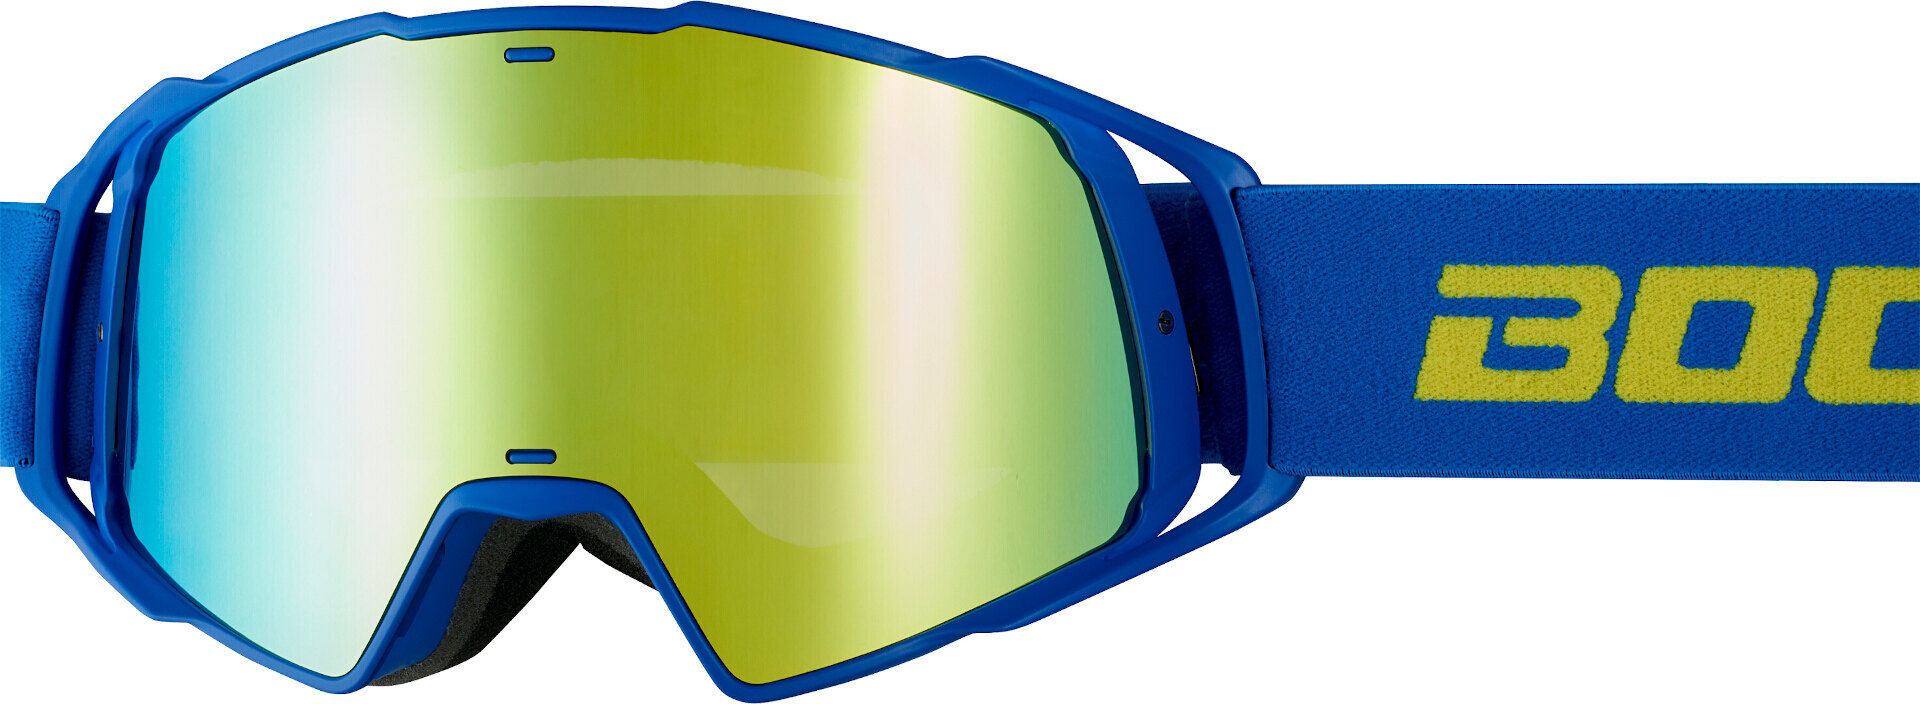 Bogotto B-Faster Gafas motocross - Azul Amarillo (un tamaño)